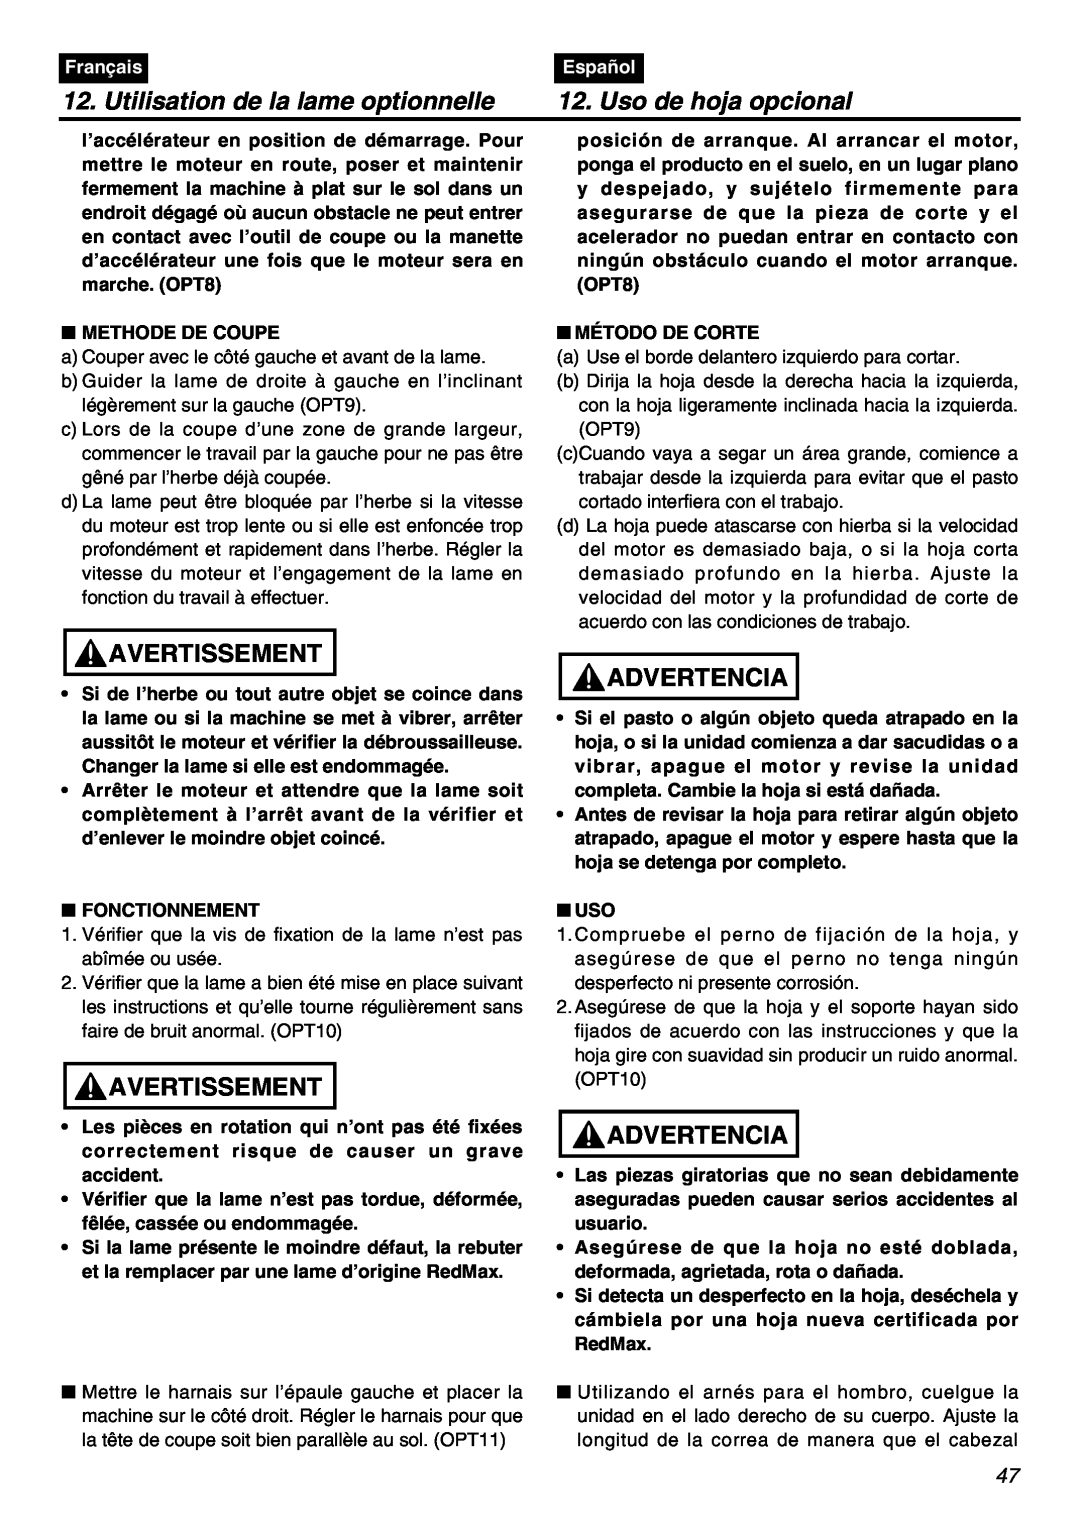 RedMax BCZ2401S-CA Utilisation de la lame optionnelle, Uso de hoja opcional, Avertissement, Advertencia, Français, Español 